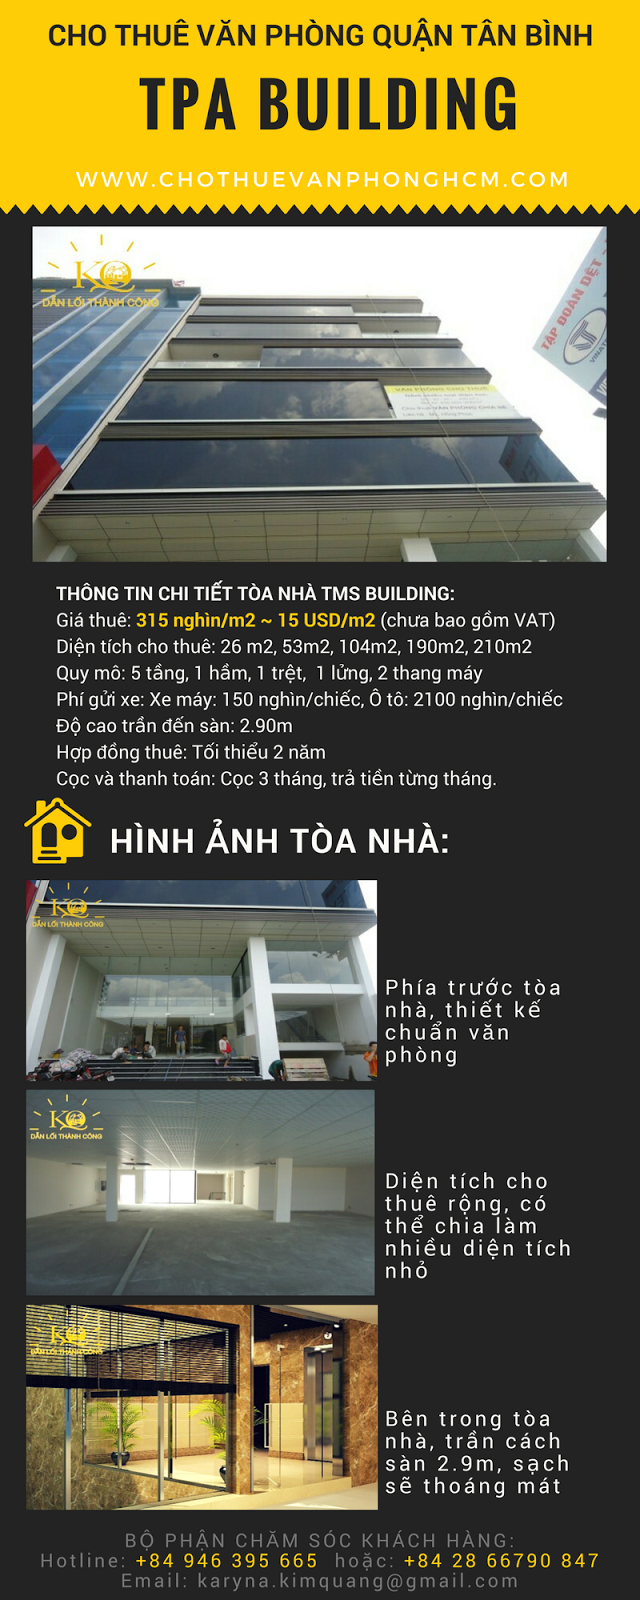 cho-thue-van-phong-quan-tan-binh-tpa-building-dia-oc-kim-quang-1.png